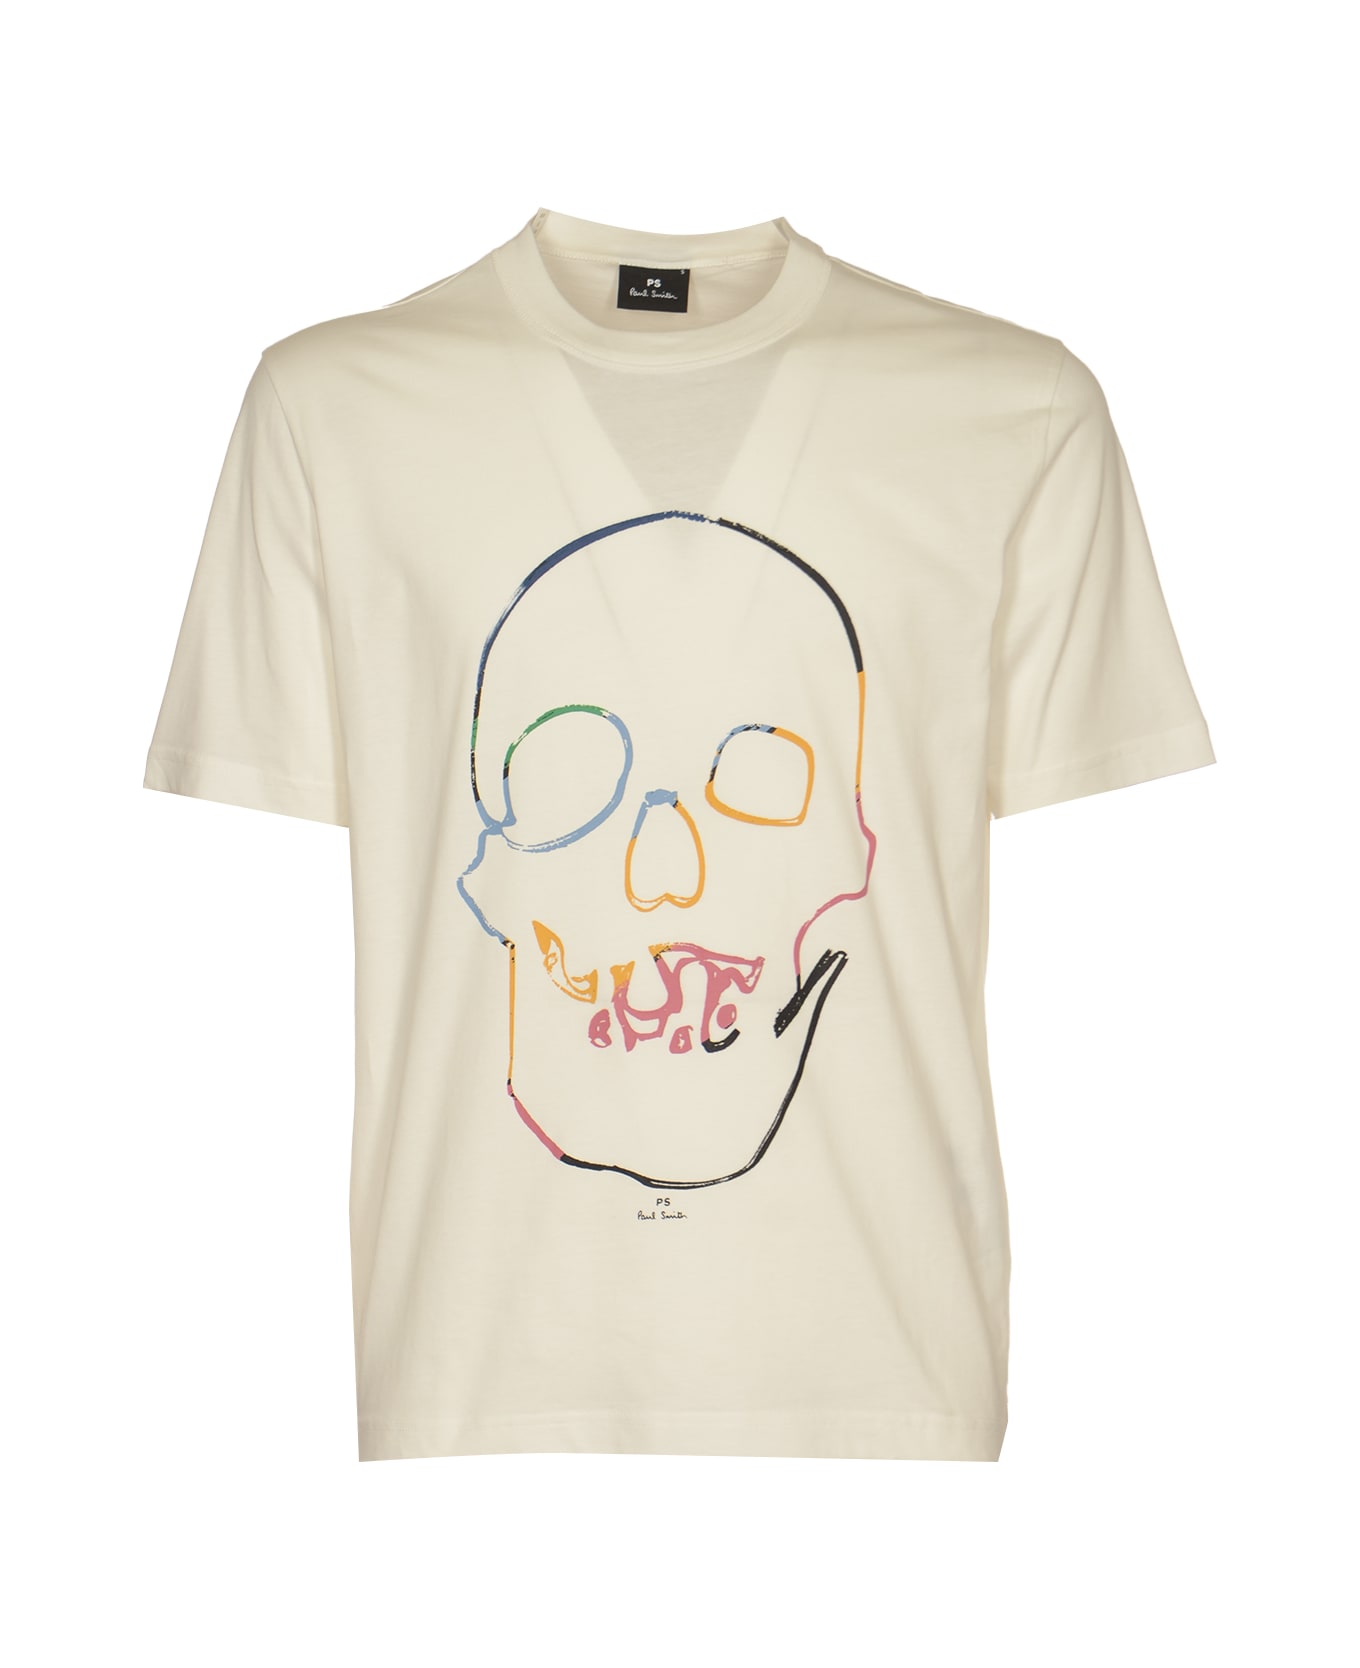 Paul Smith Linear Skull T-shirt - White